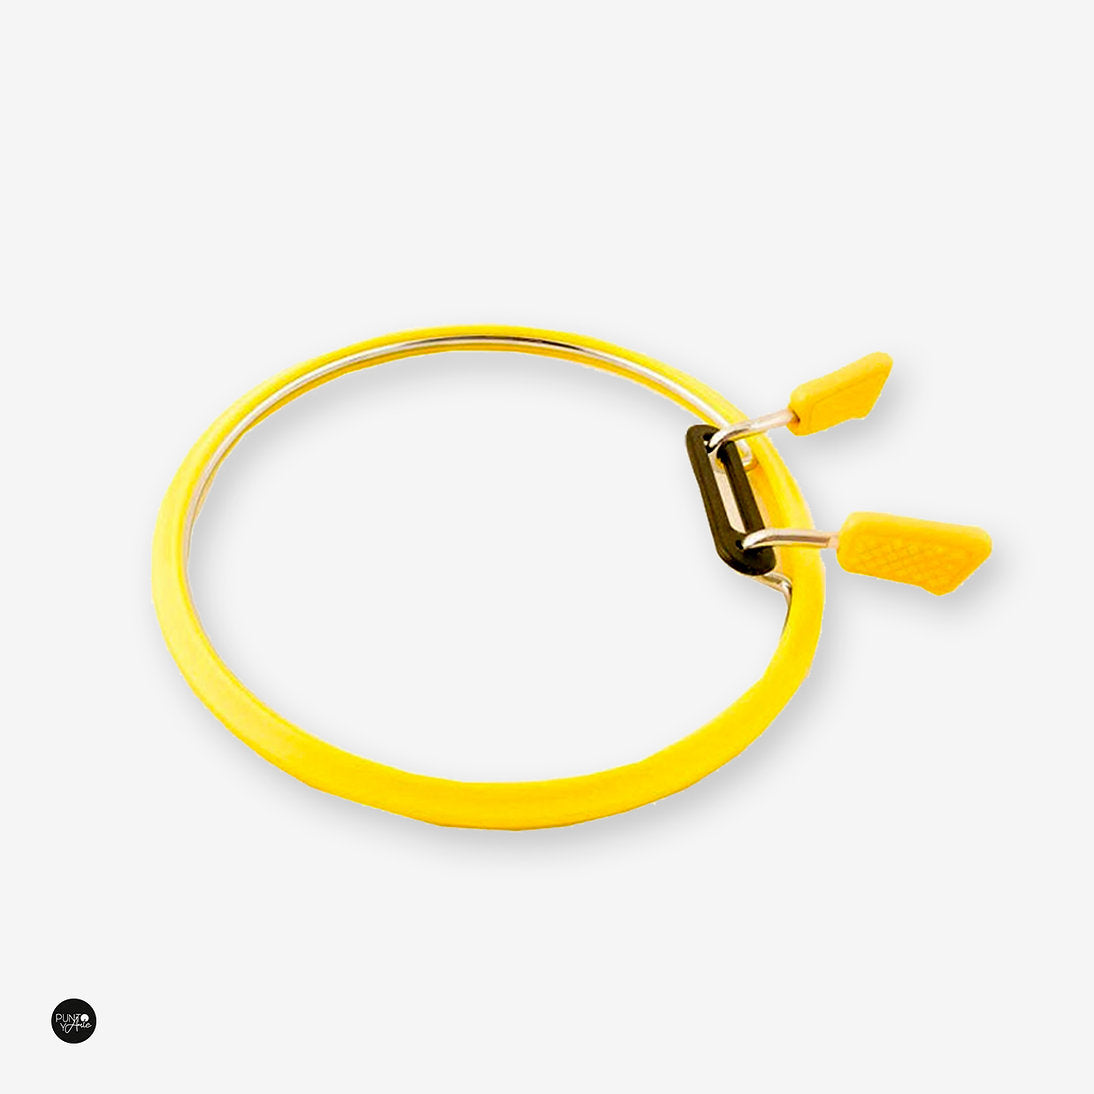 Cerceau flexible Nurge 160 en jaune : illuminez vos projets de broderie avec facilité et précision